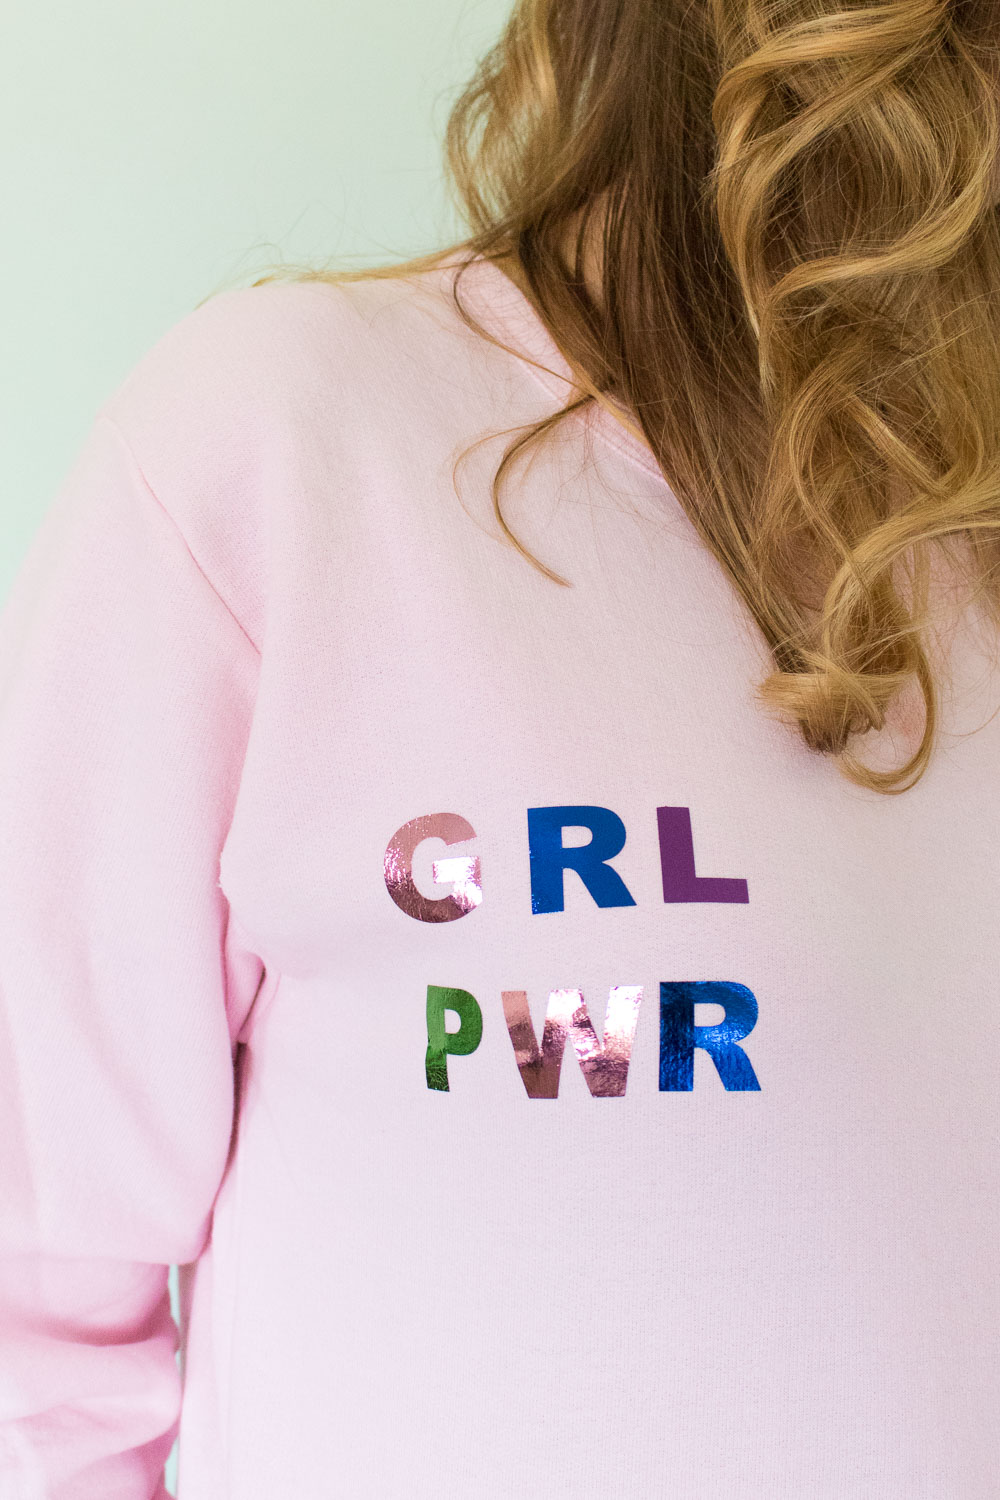 DIY Foiled Girl Power Sweatshirt | Club Crafted